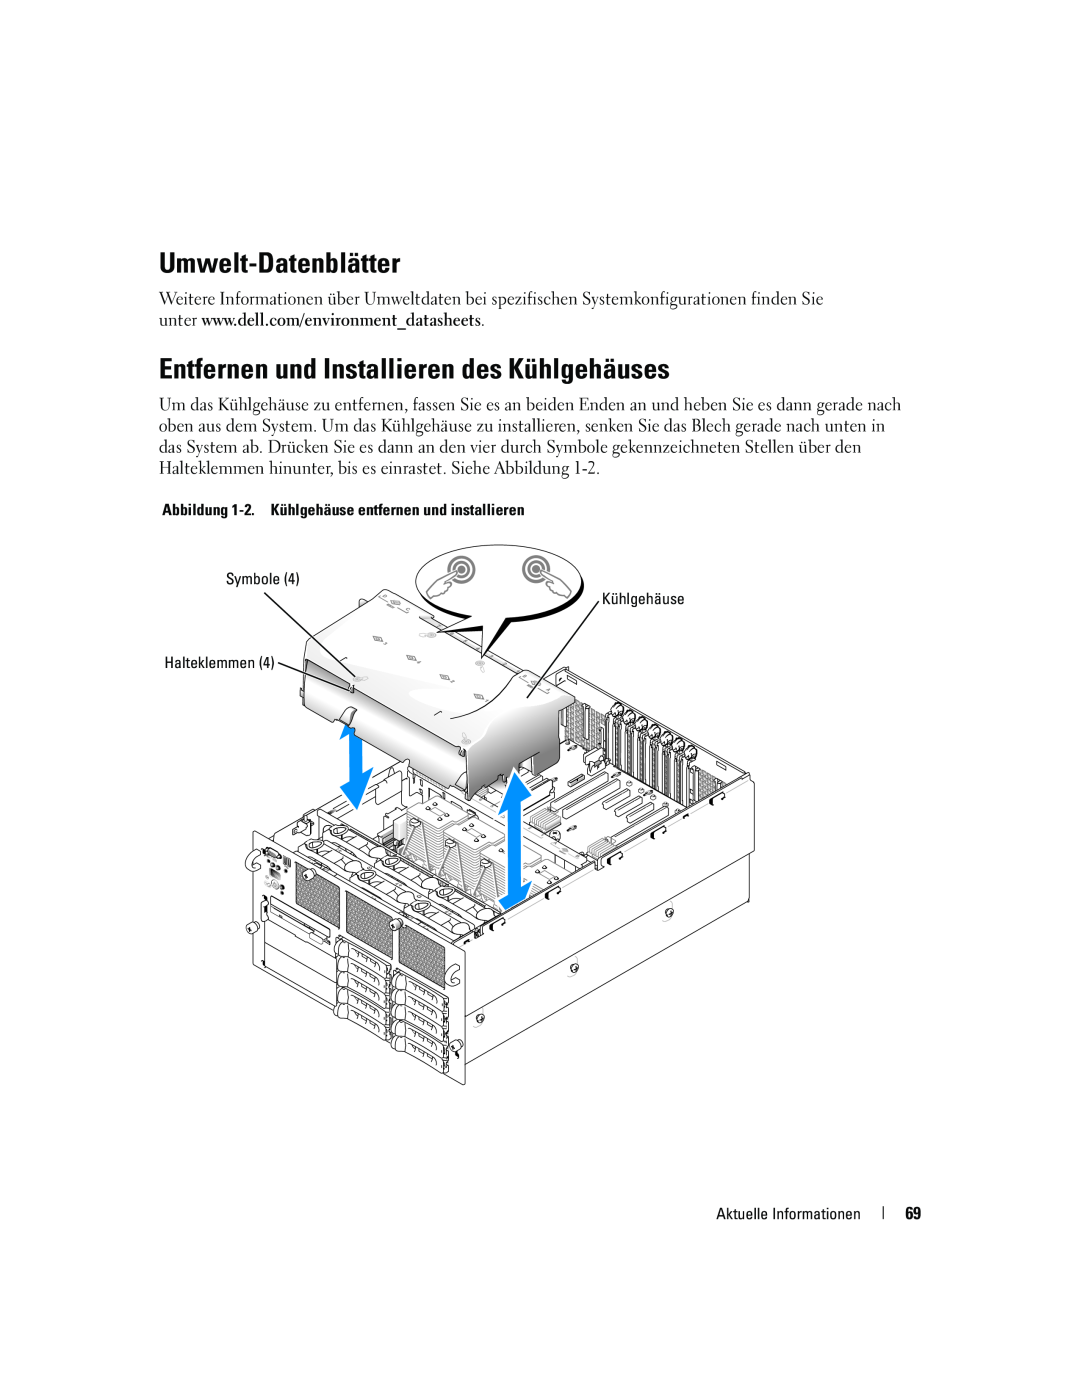 Dell 6800 manual Umwelt-Datenblätter, Entfernen und Installieren des Kühlgehäuses 